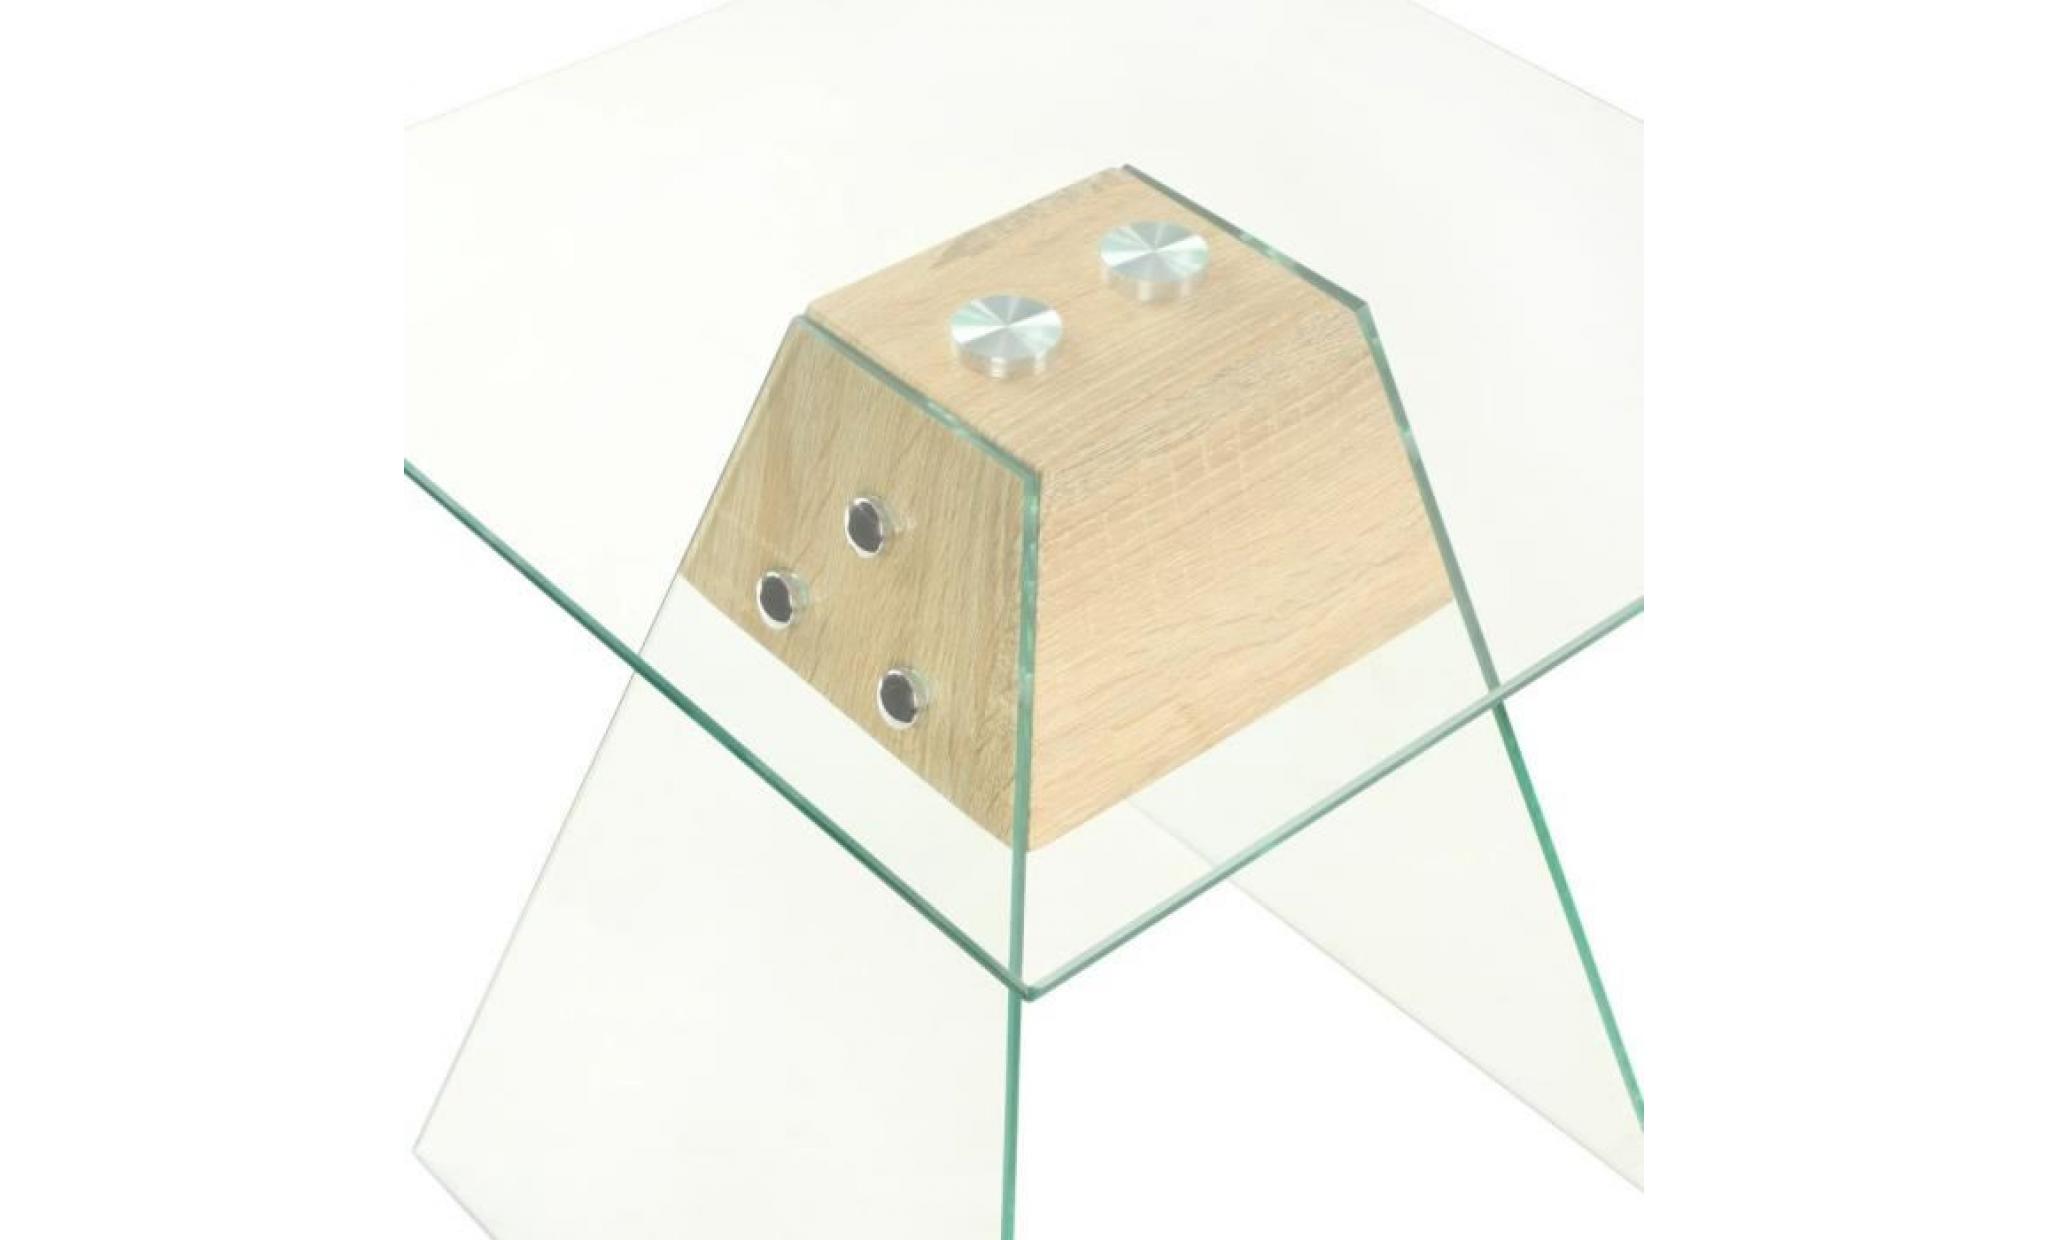 bouts de canape couleur : transparent et chene materiau : pfdm + verre trempe dimensions : 45